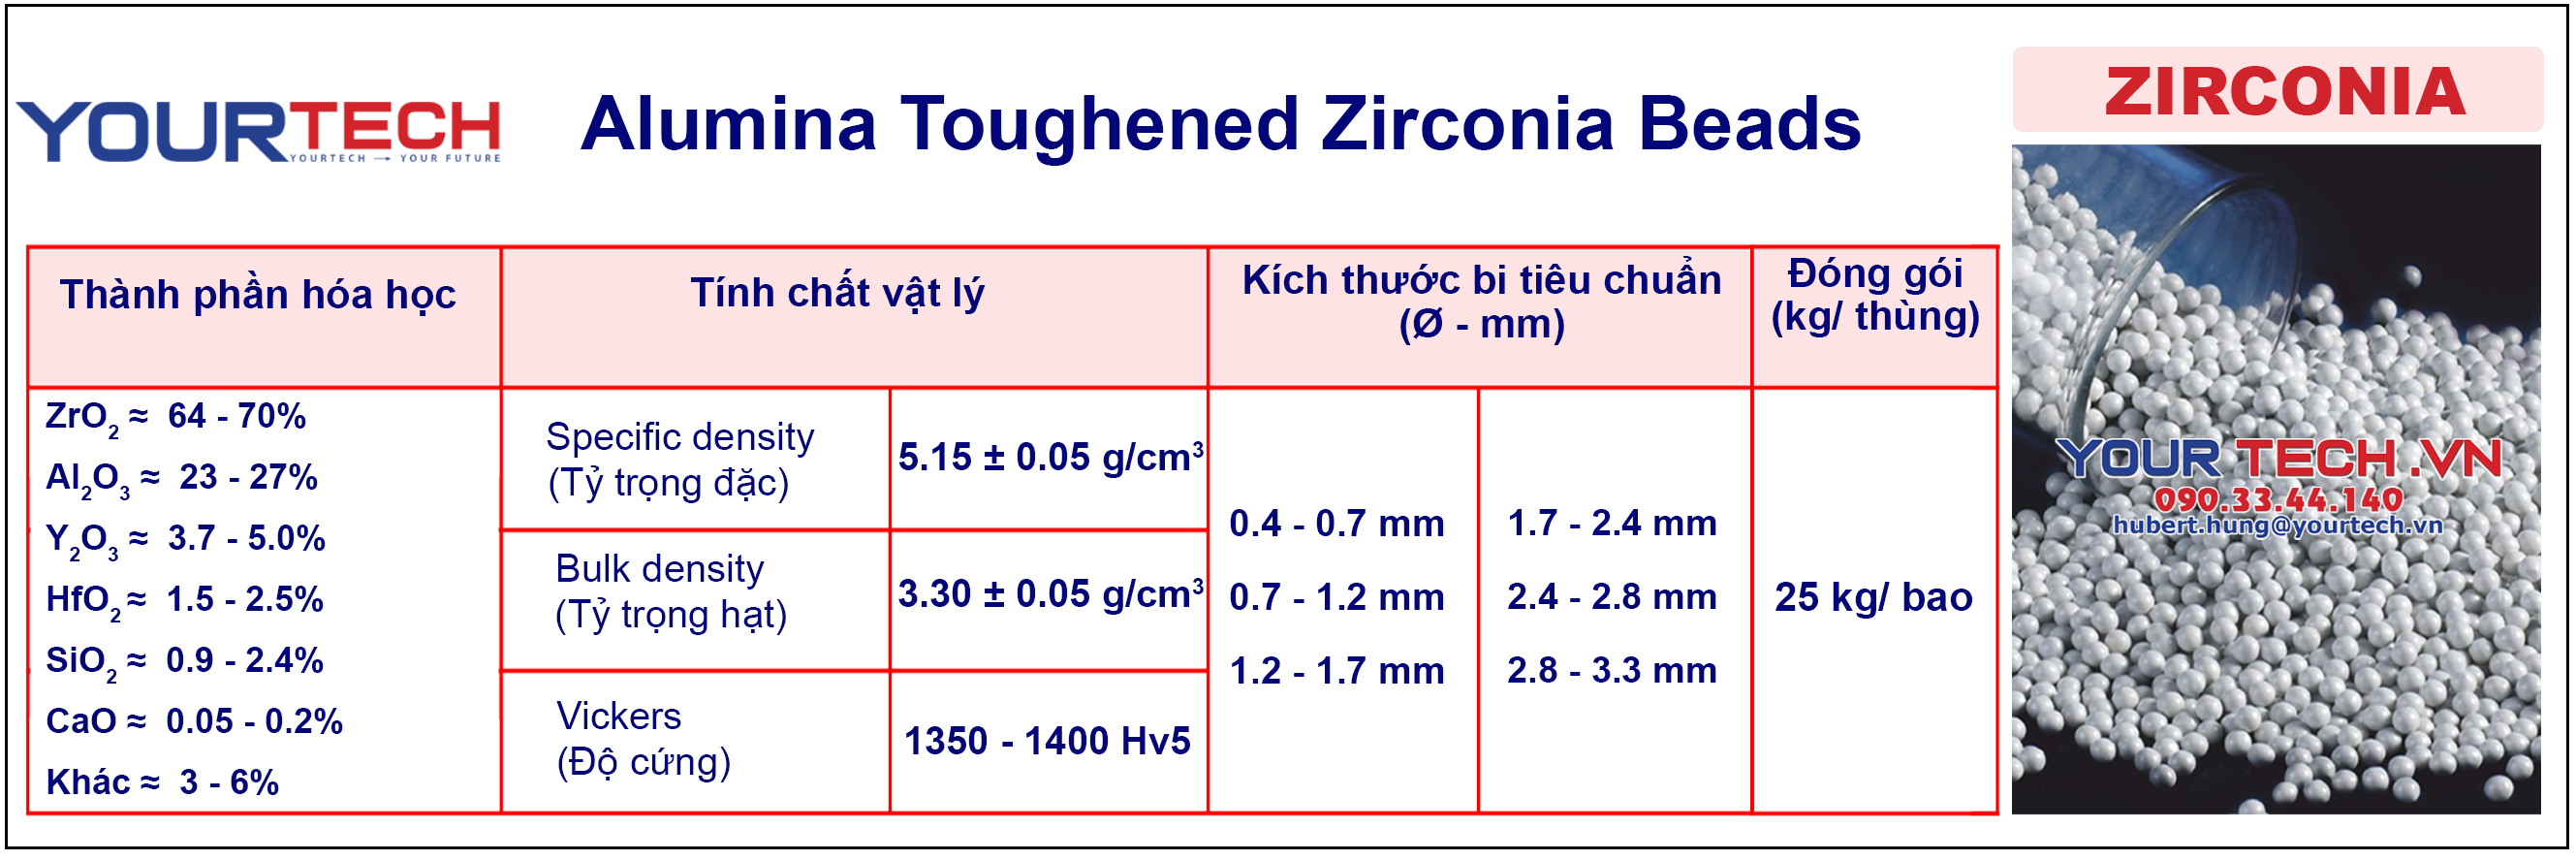 Thông số kỹ thuật bi nghiền sứ - Zirconia ceramic